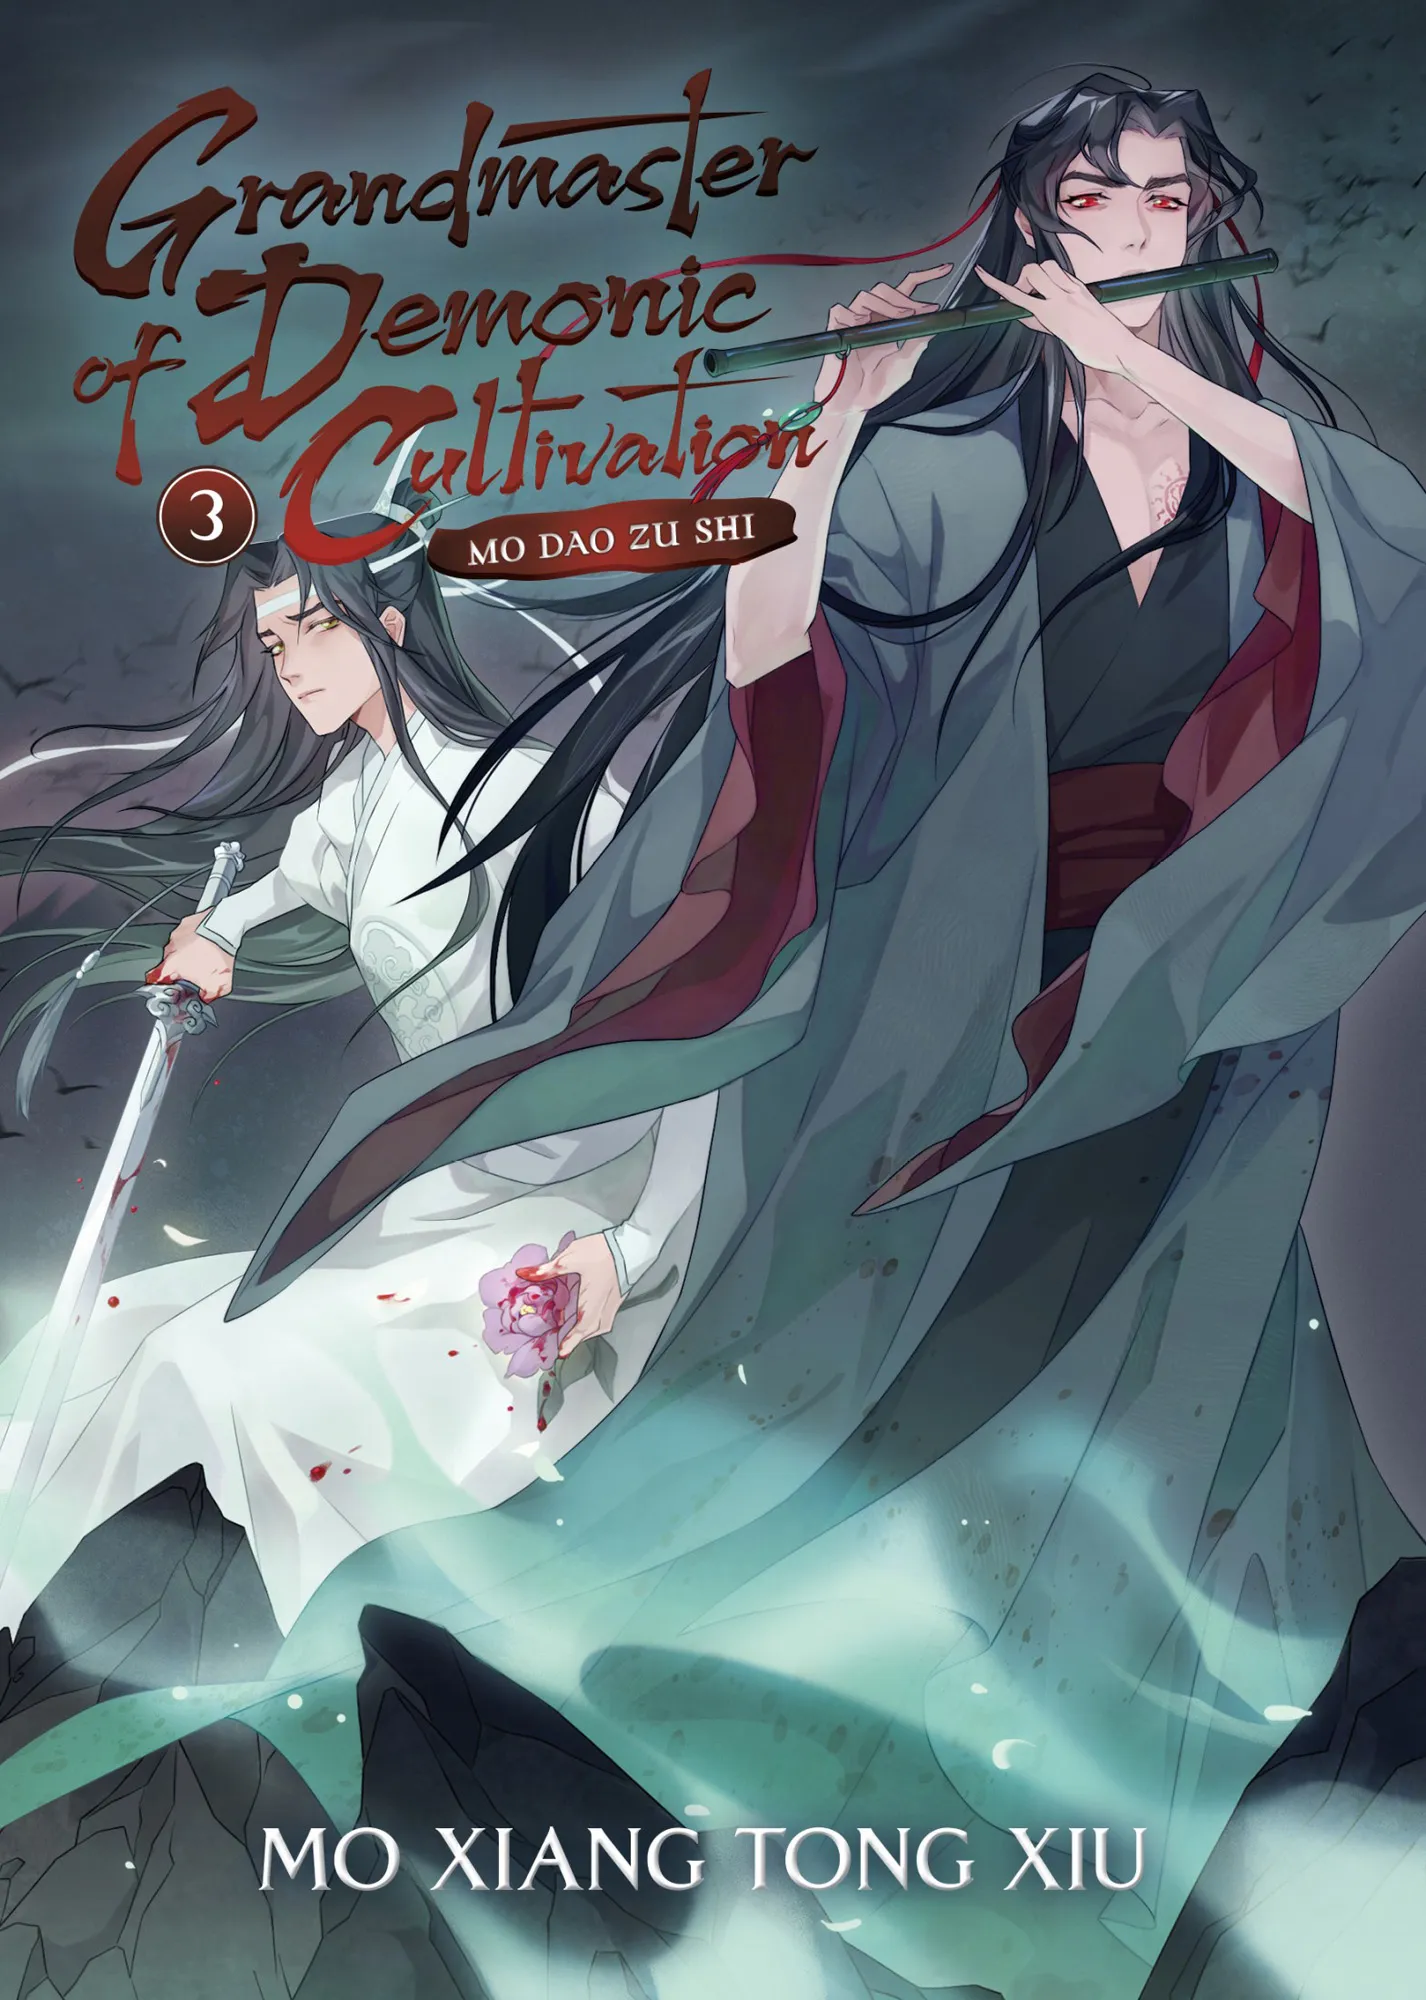 Mo Dao Zu Shi (Novel) Vol. 3 (Grandmaster of Demonic Cultivation: Mo Dao Zu Shi #3)